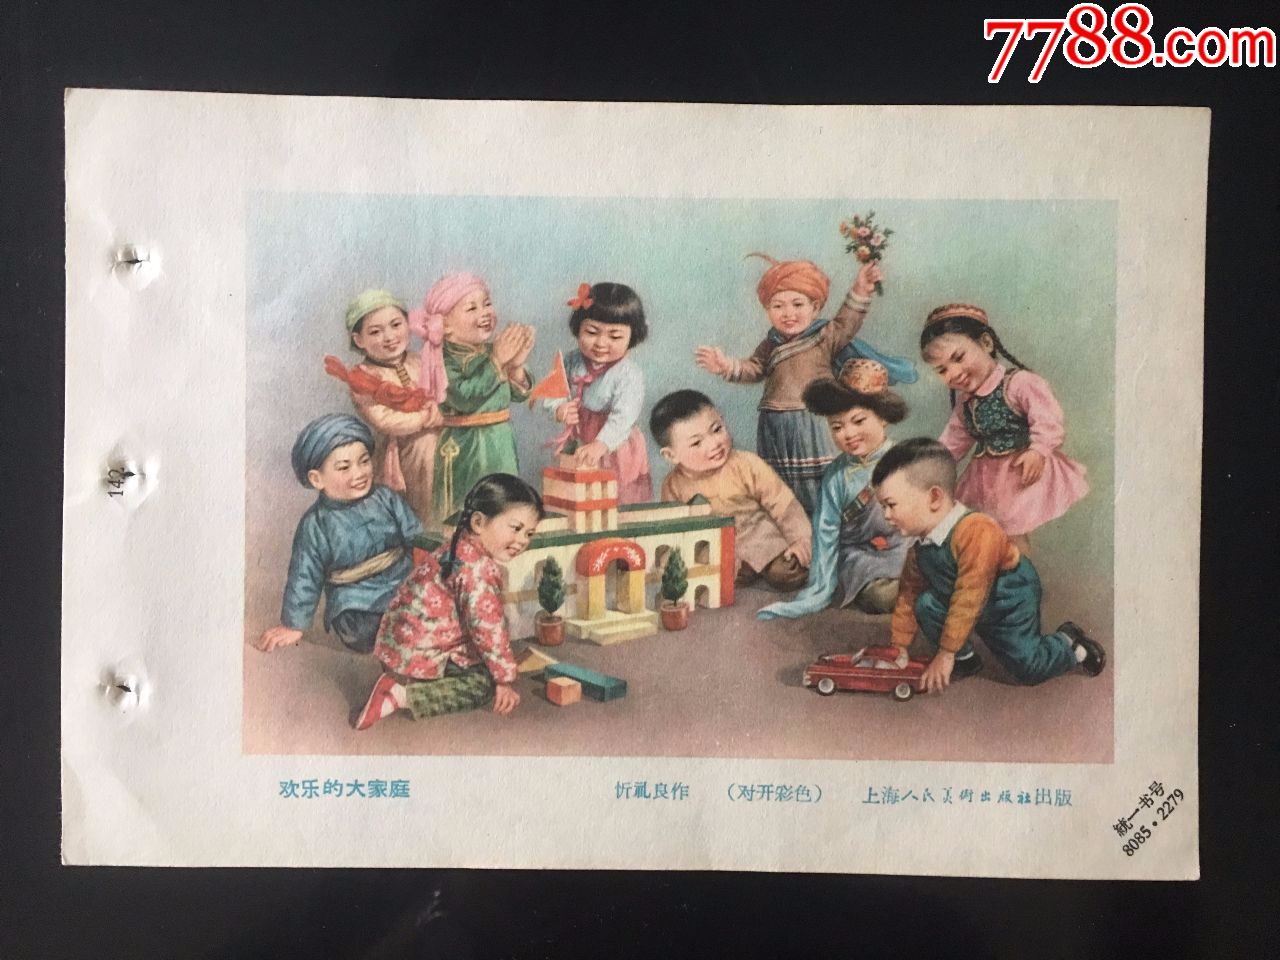 欢乐大家庭(新中国儿童题材,名家忔礼良作品)